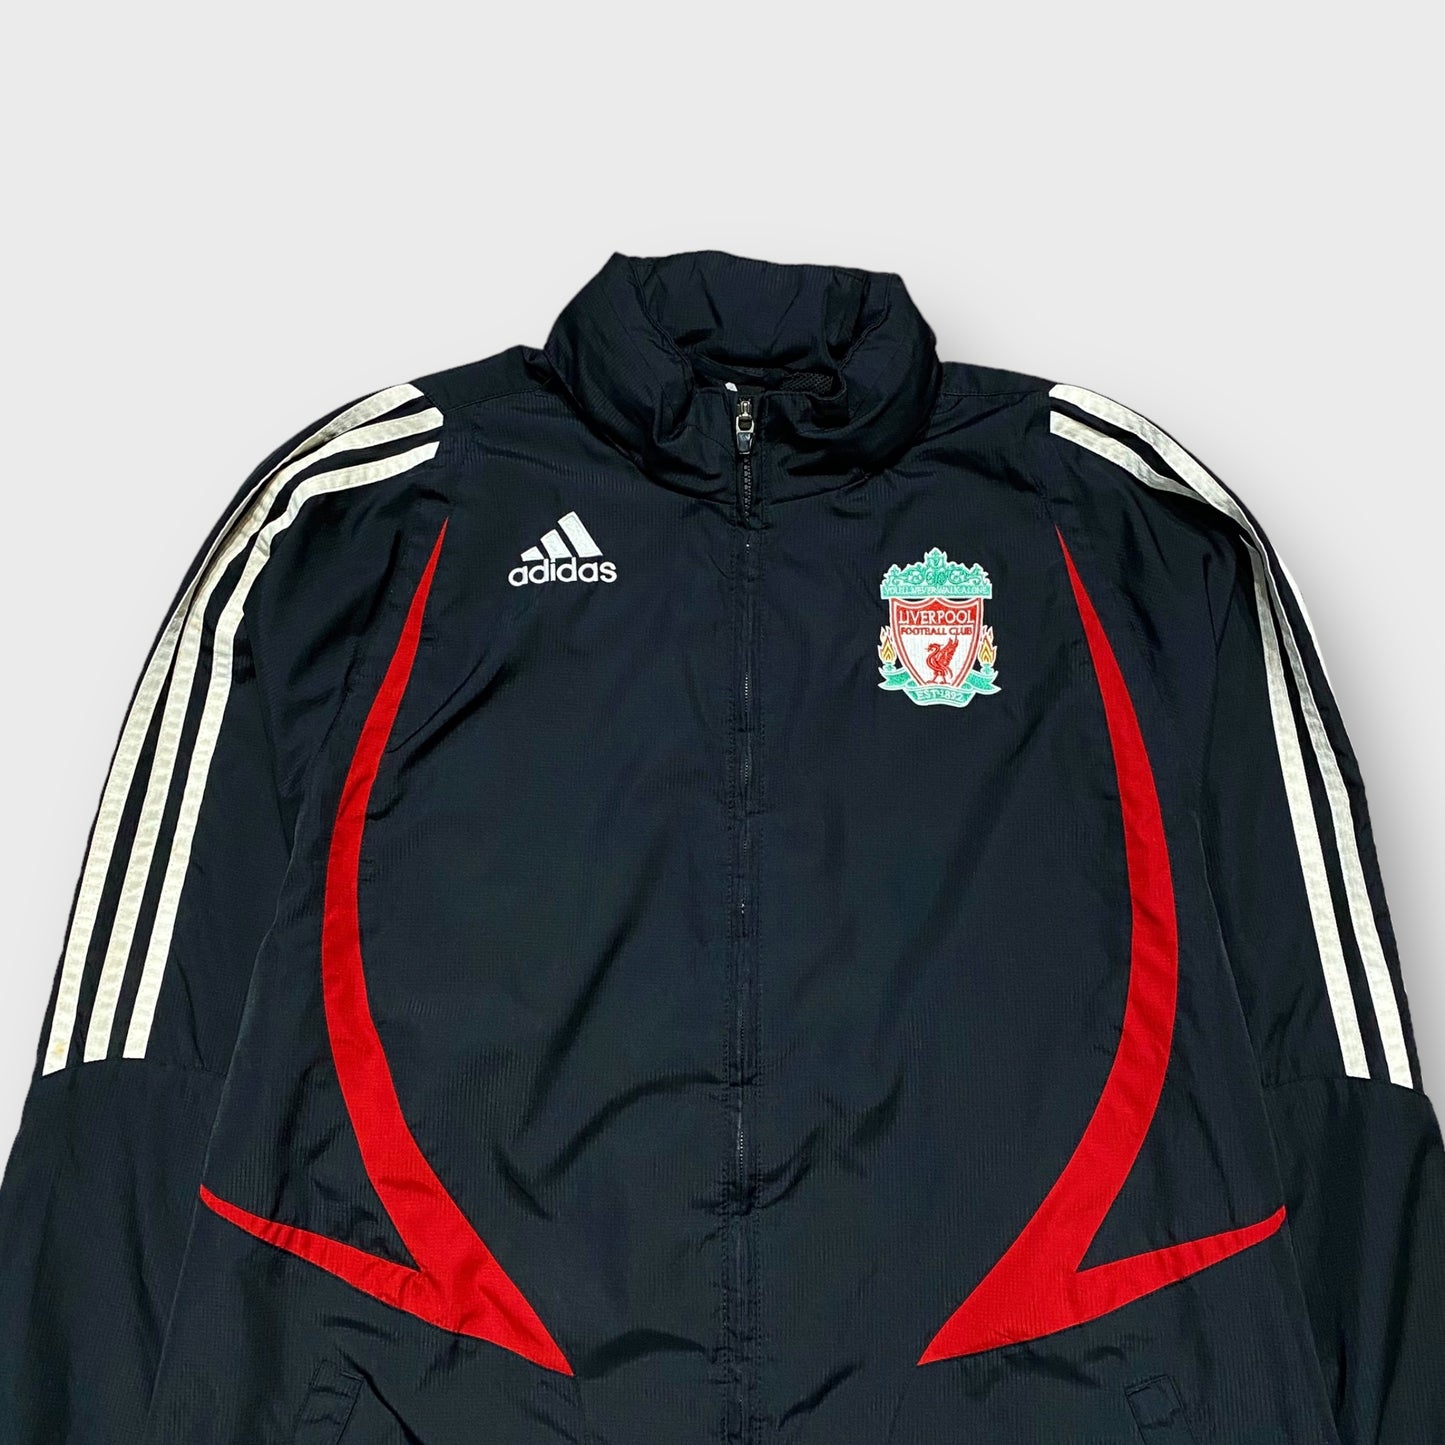 00's "adidas" Liverpool team nylon jacket